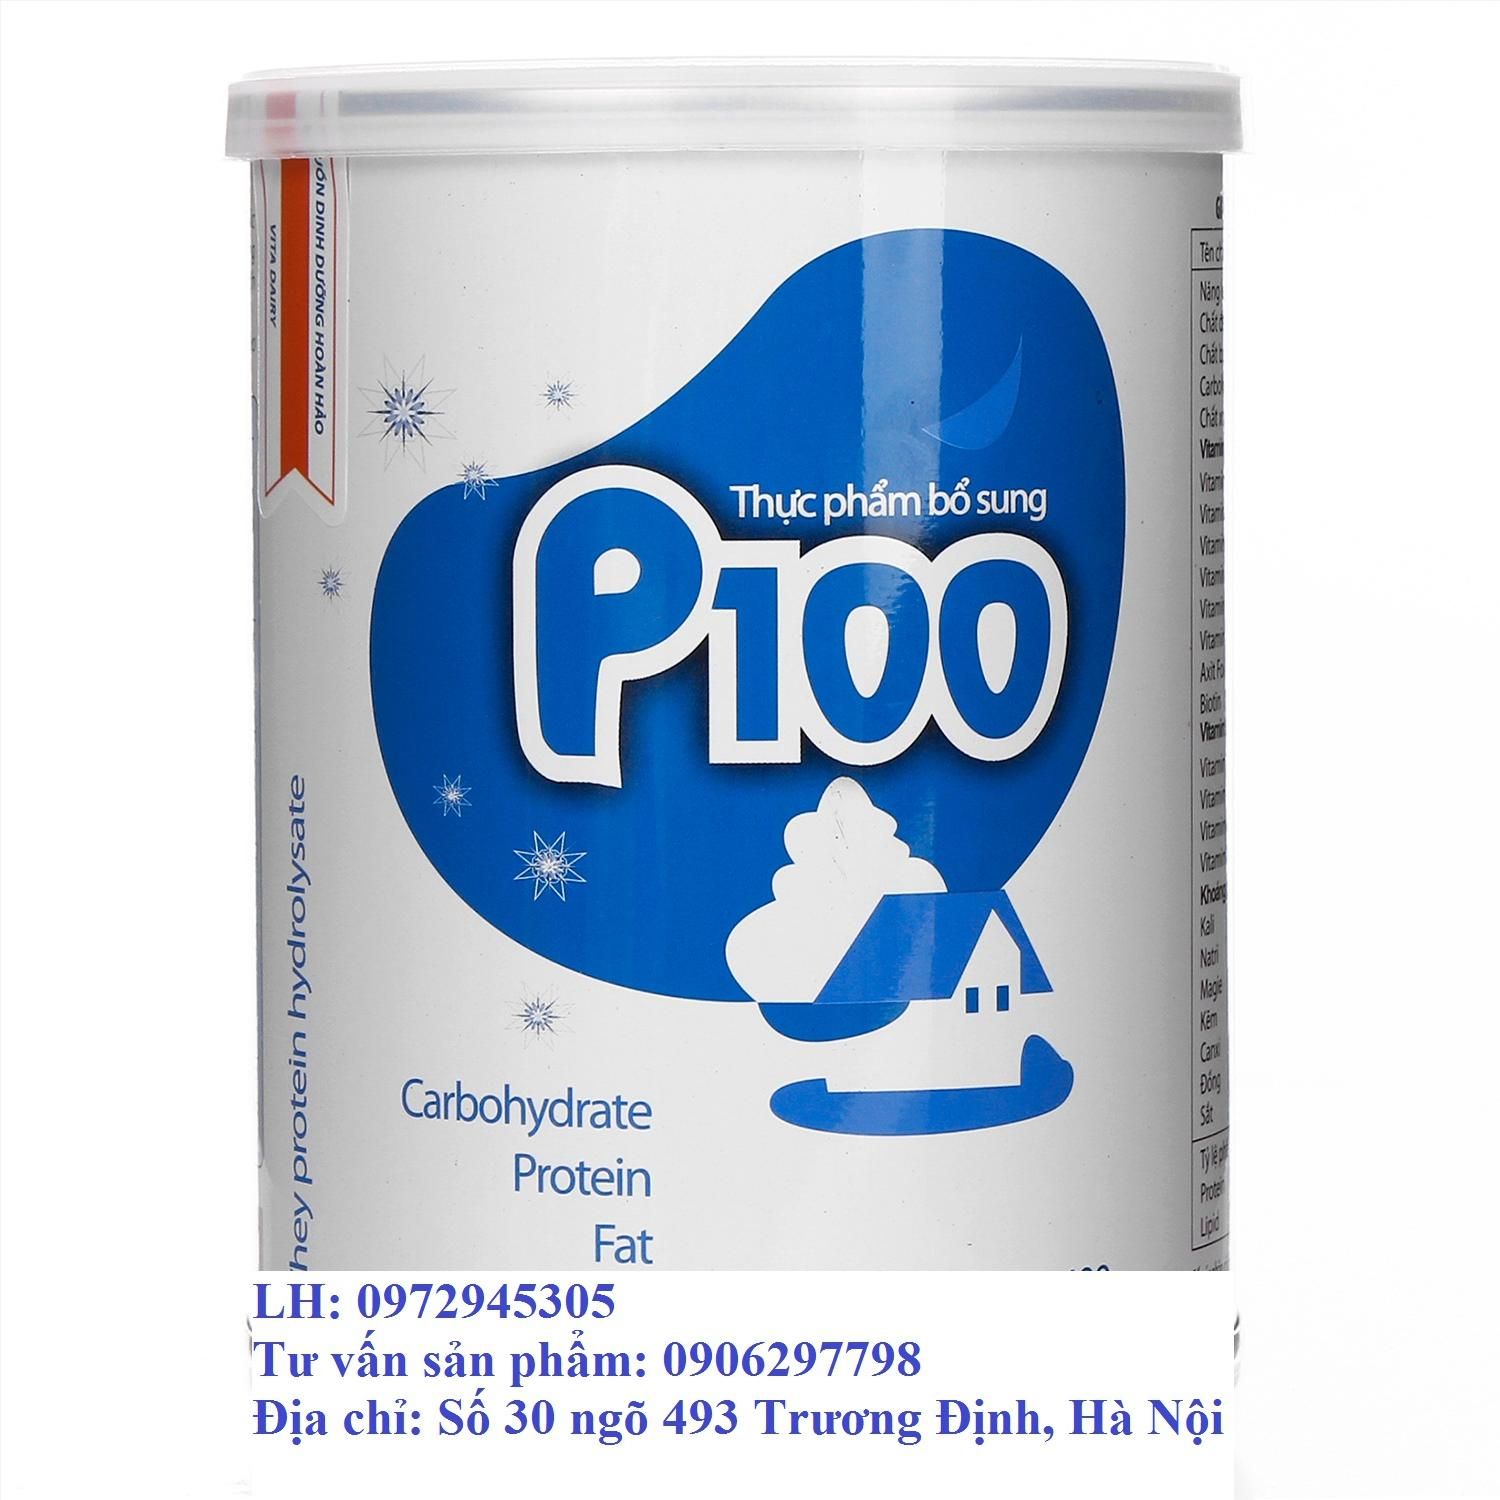 Sữa P100 của Viện dinh dưỡng